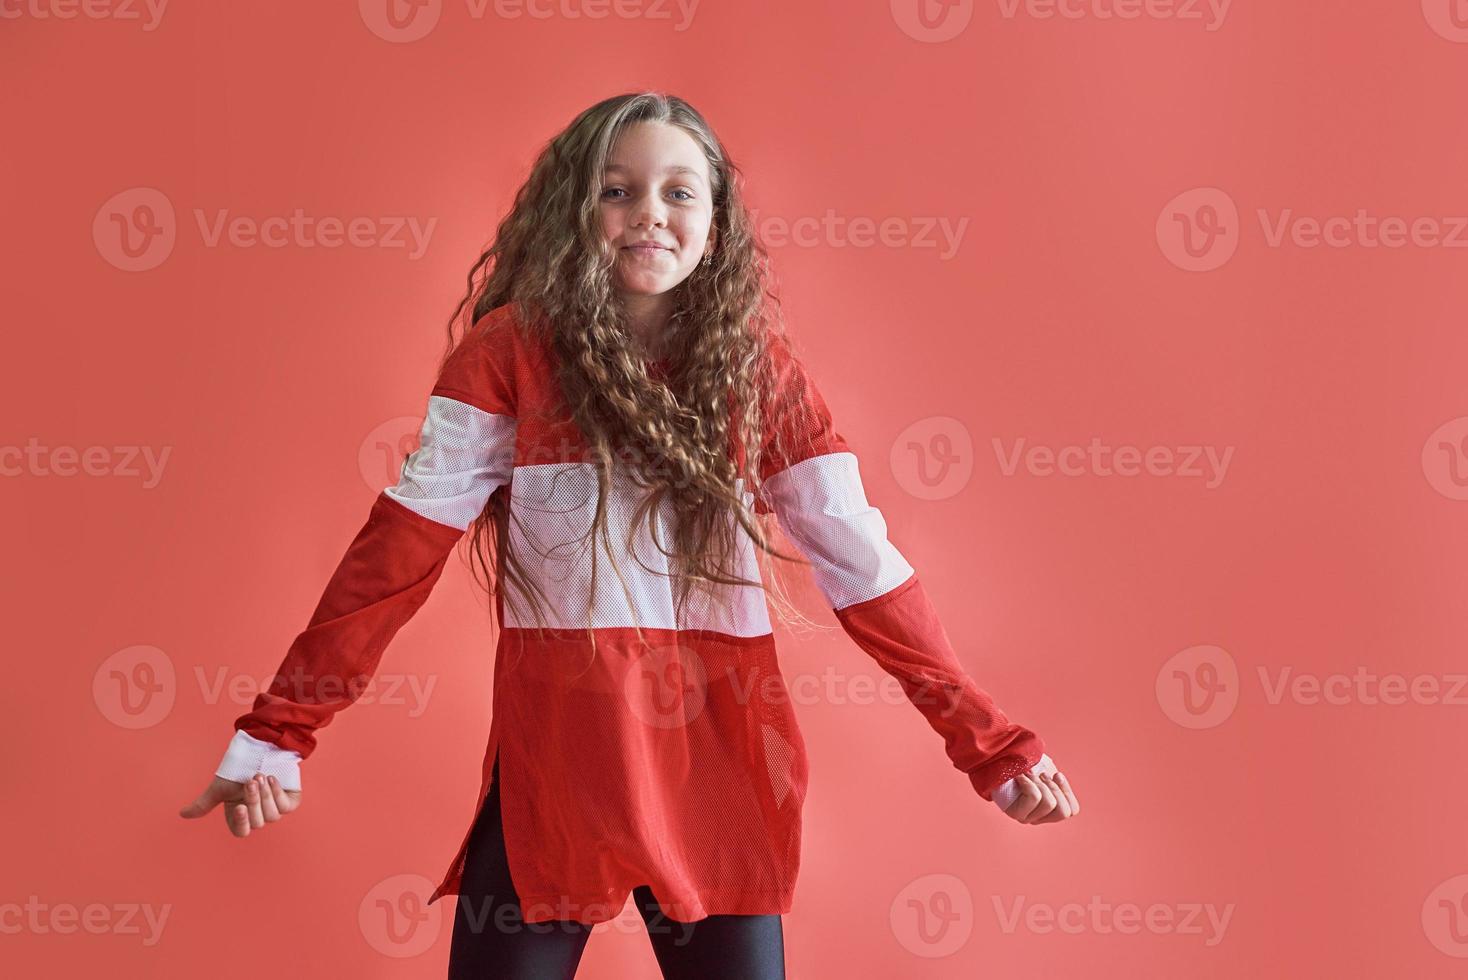 jovem linda linda garota dançando sobre fundo vermelho, estilo hip-hop moderno slim adolescente pulando foto